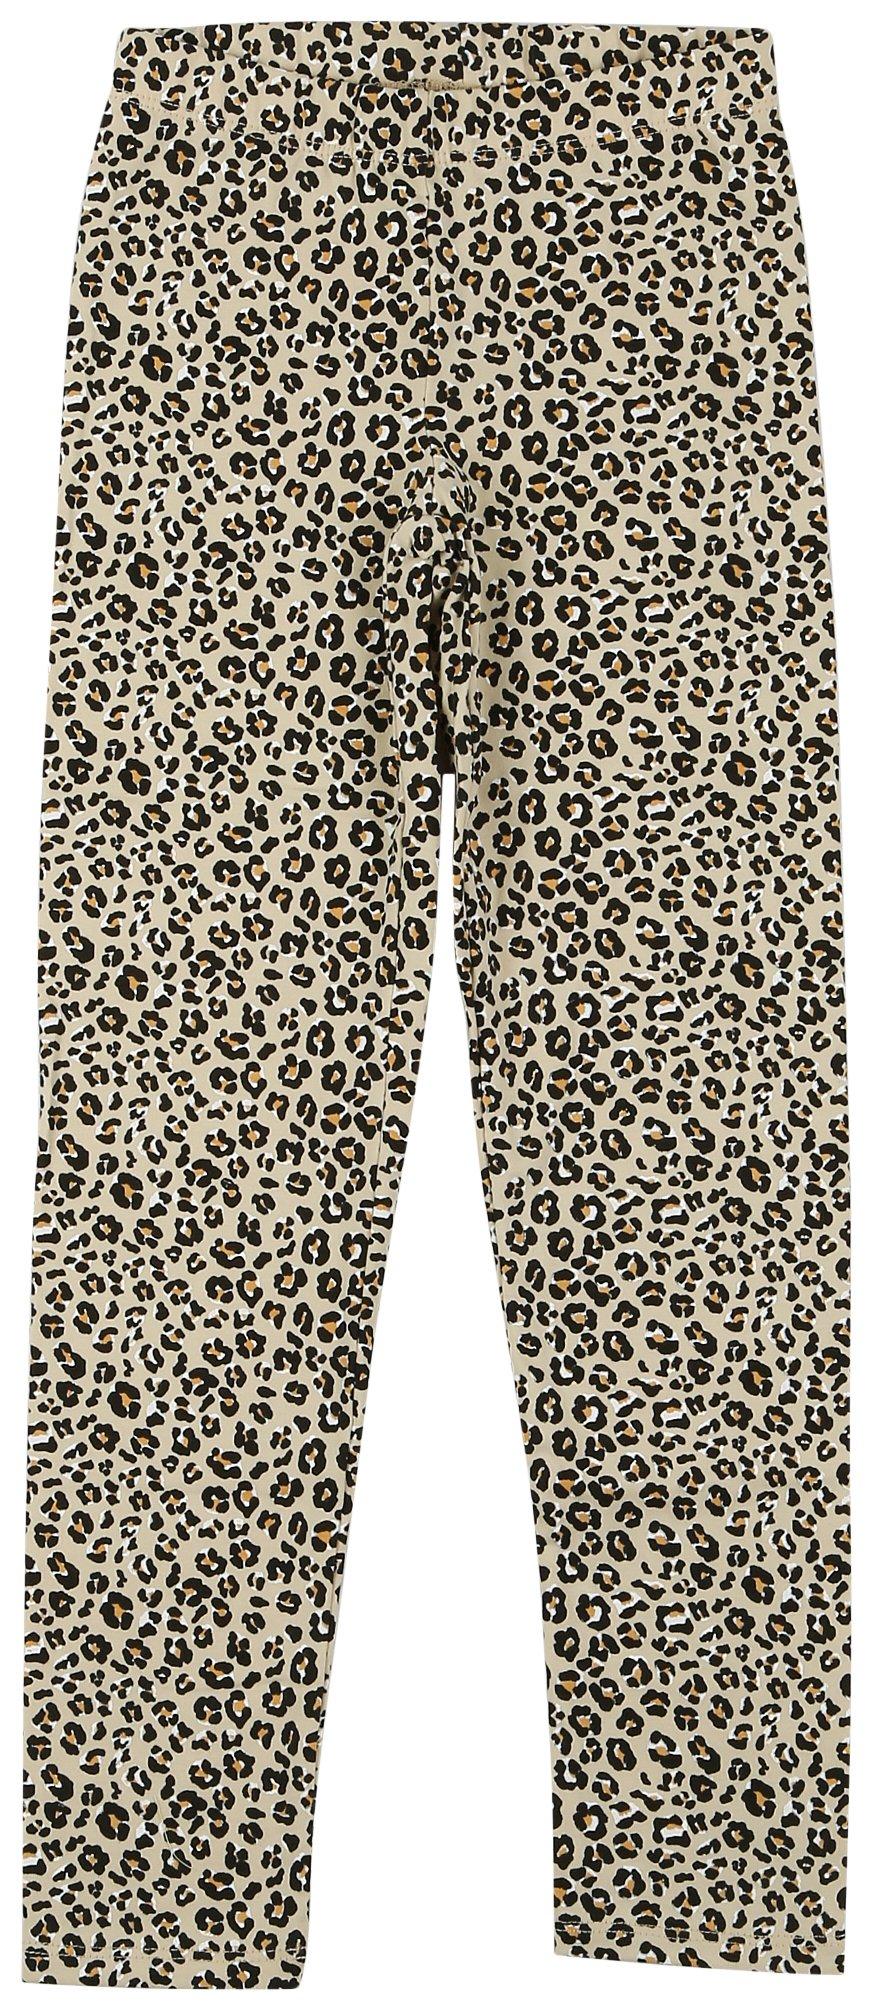 Little Girls Leopard Print Leggings